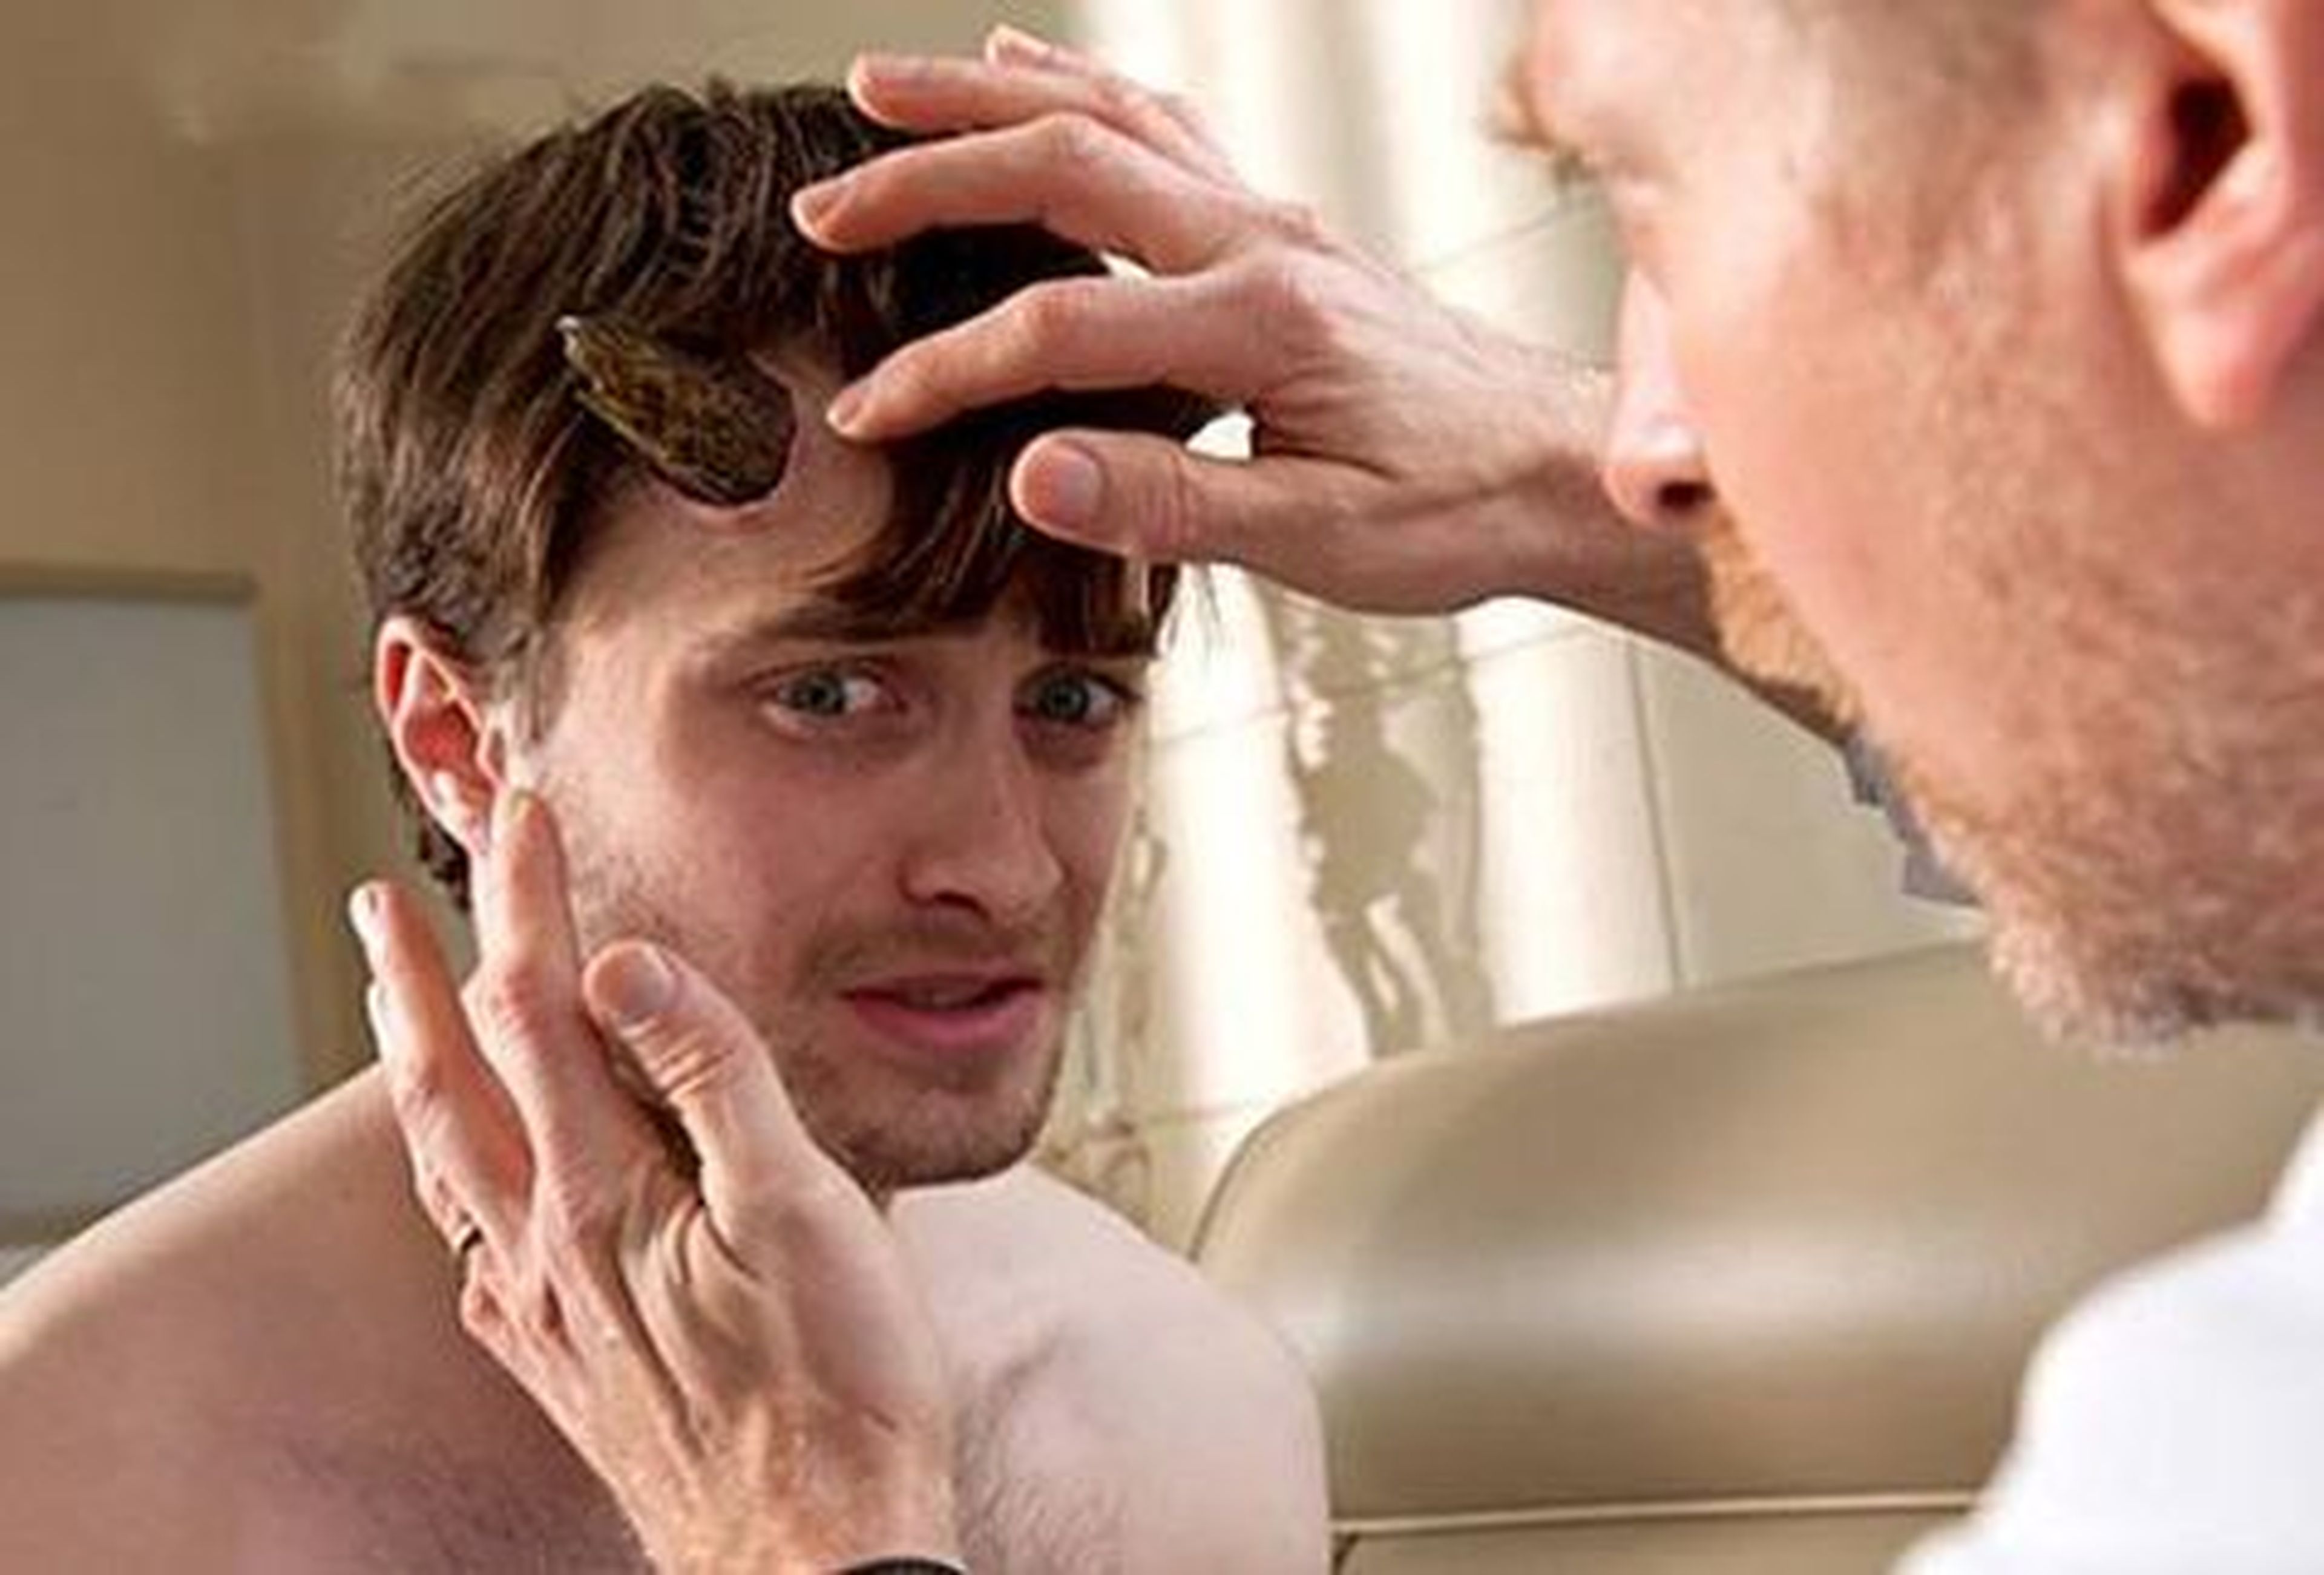 Un Daniel Radcliffe cornudo protagoniza el primer tráiler de Horns